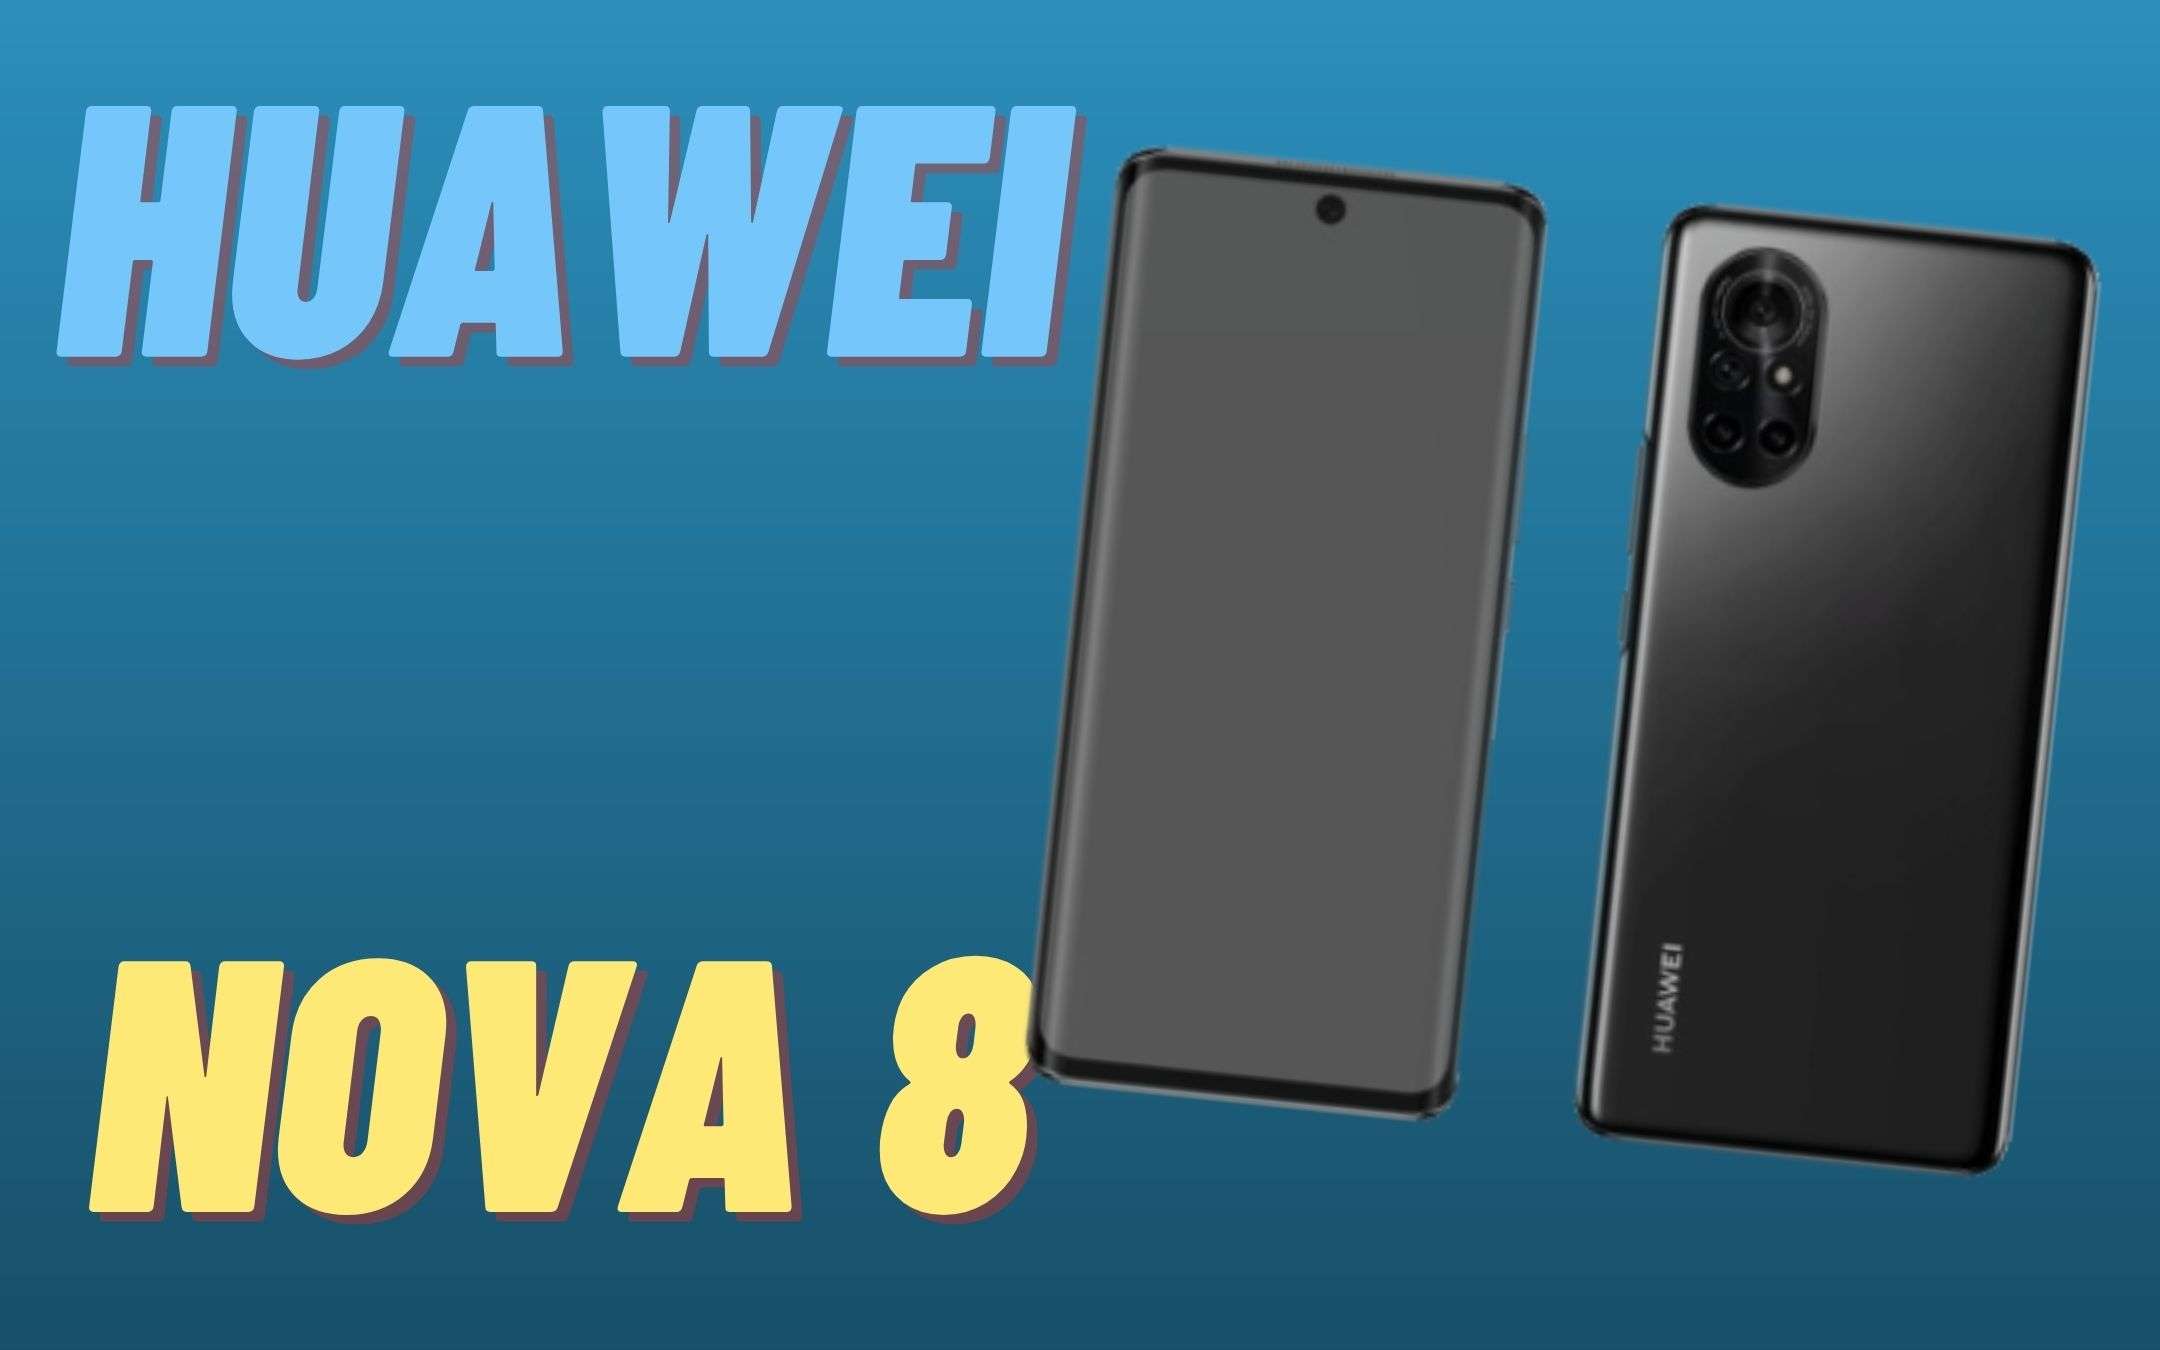 Huawei Nova 8: le specifiche tecniche complete